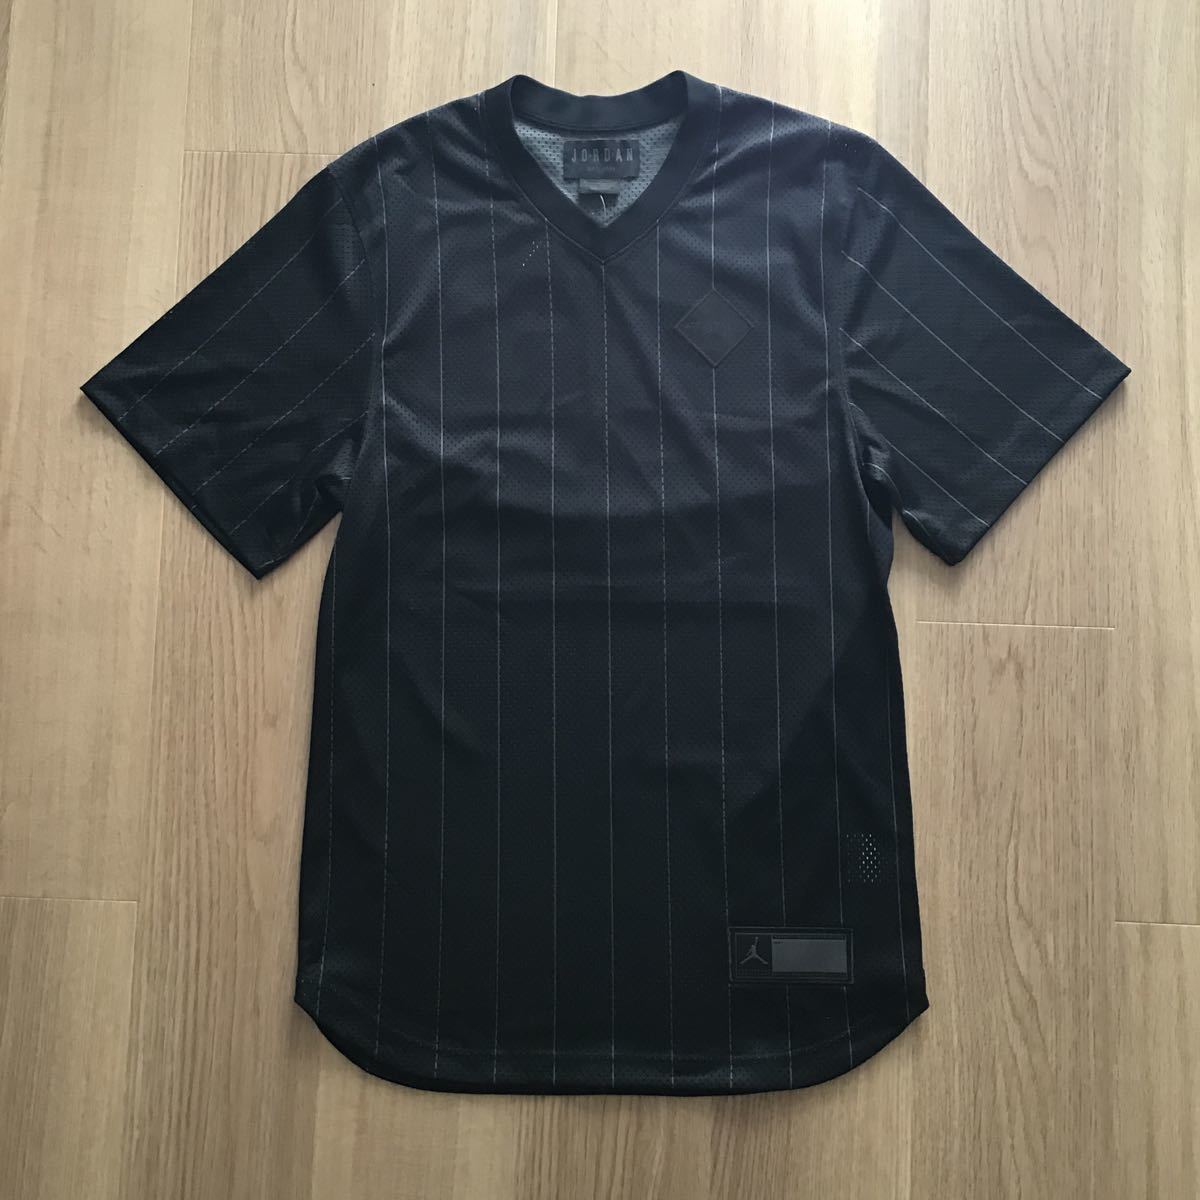 新品未使用品 Jordan baseball shirt Black Sサイズ